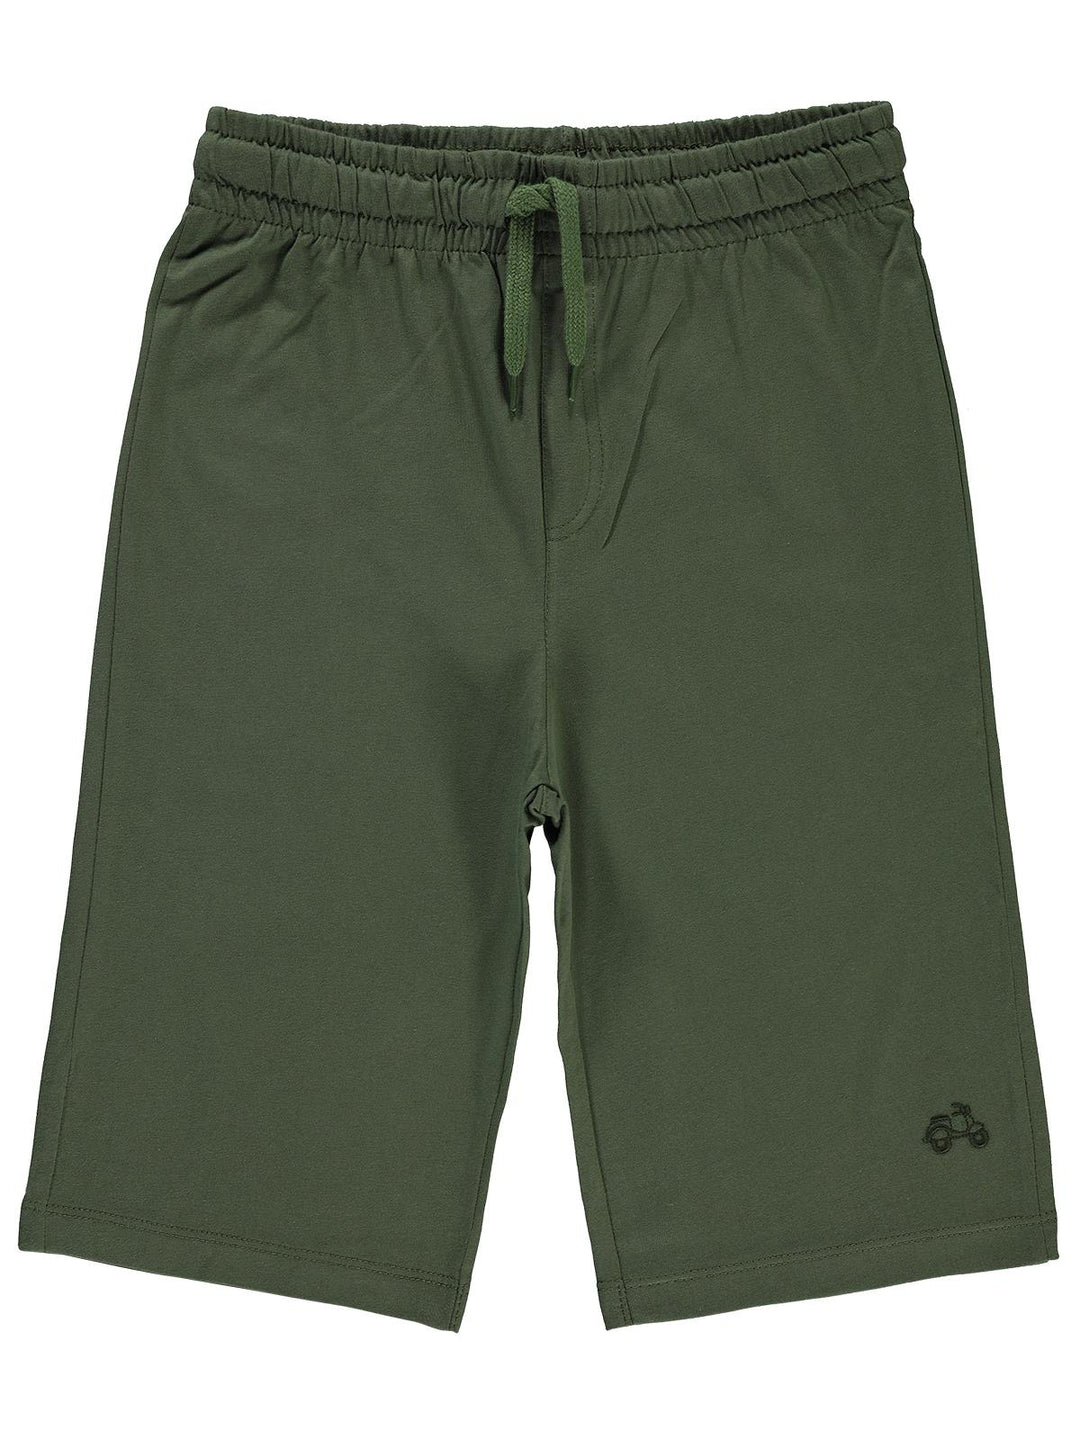 Civil Boys Cotton Long shorts #D934-2 (S-22)